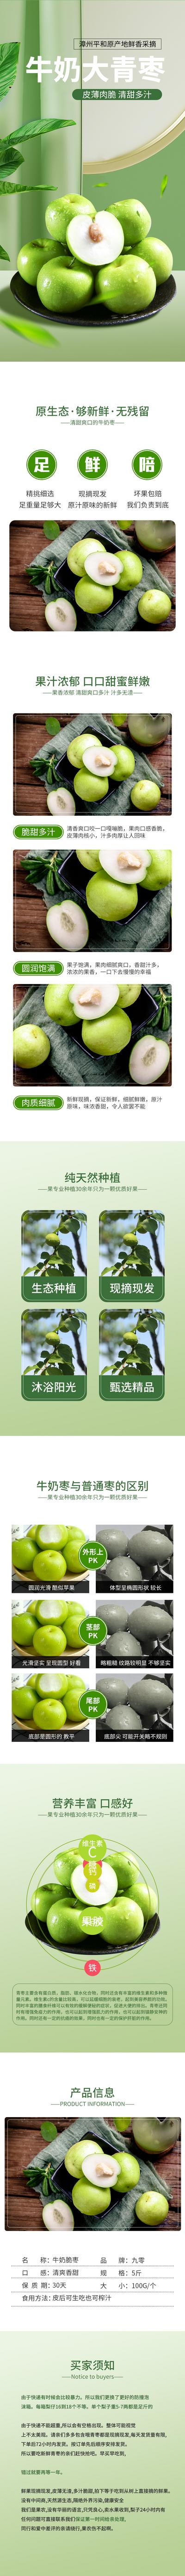 南门网 广告 海报 电商 青枣 水果 详情页 农产品